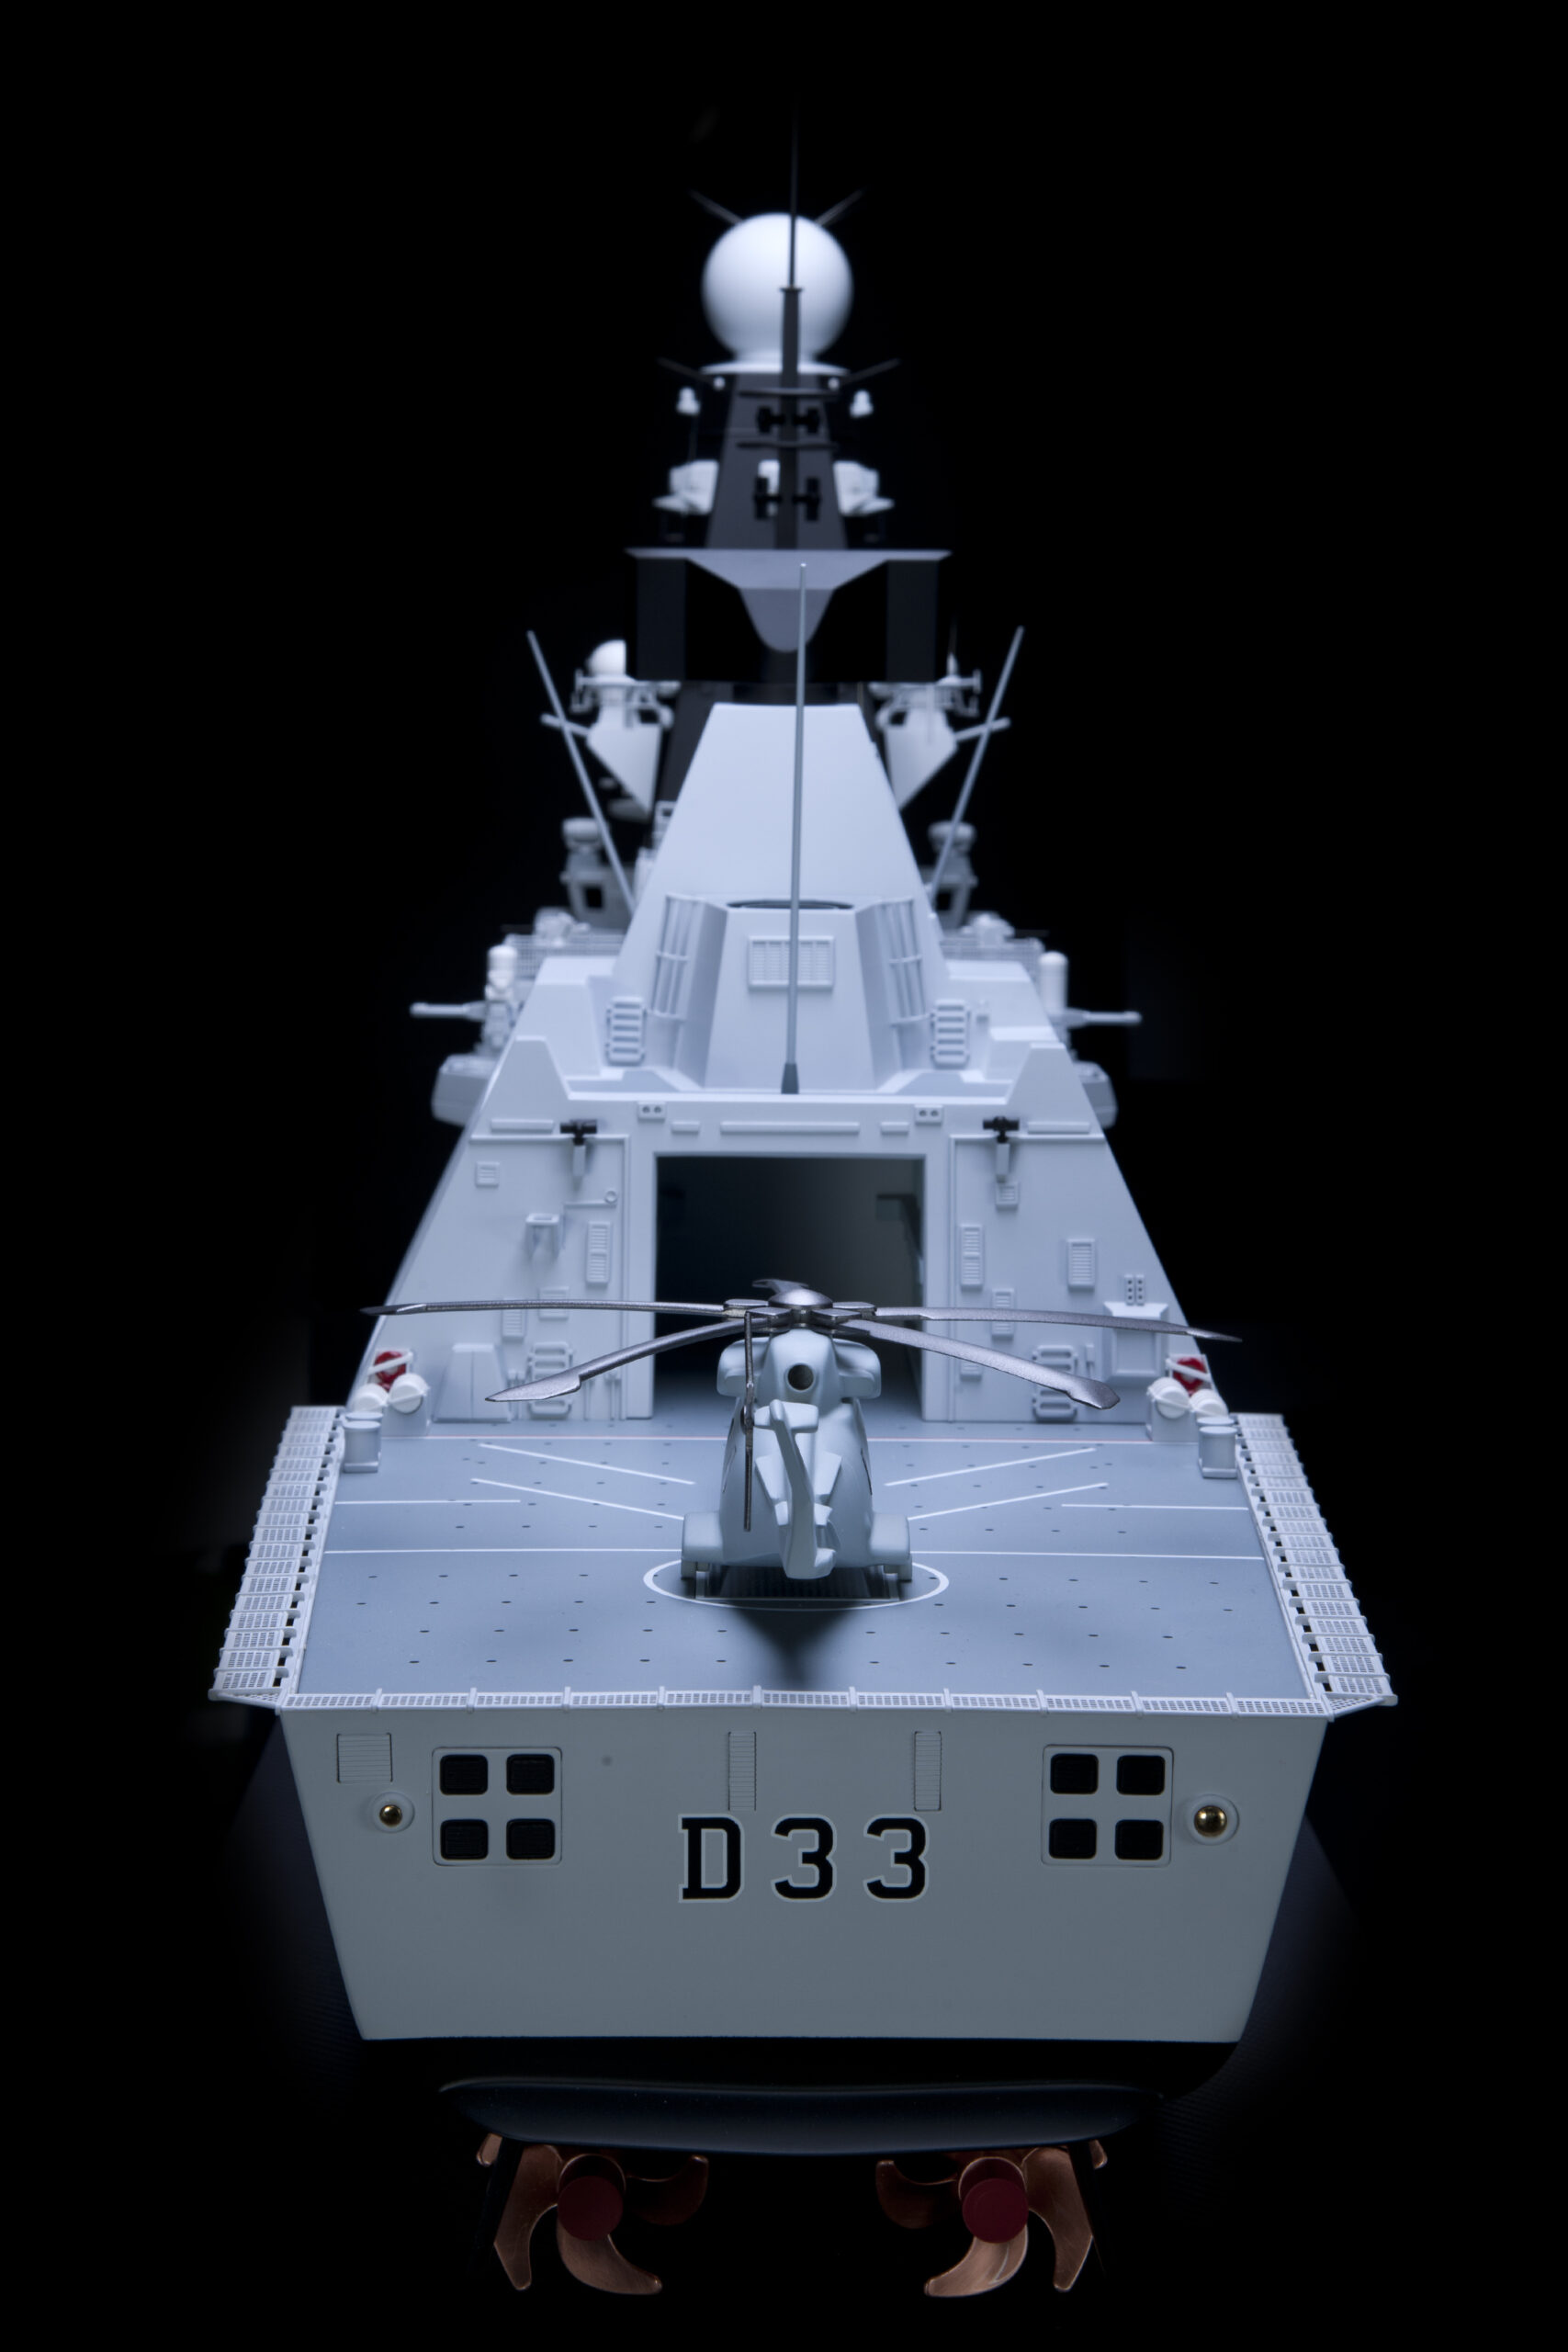 1,8Metre Model of type 45 Destroyer